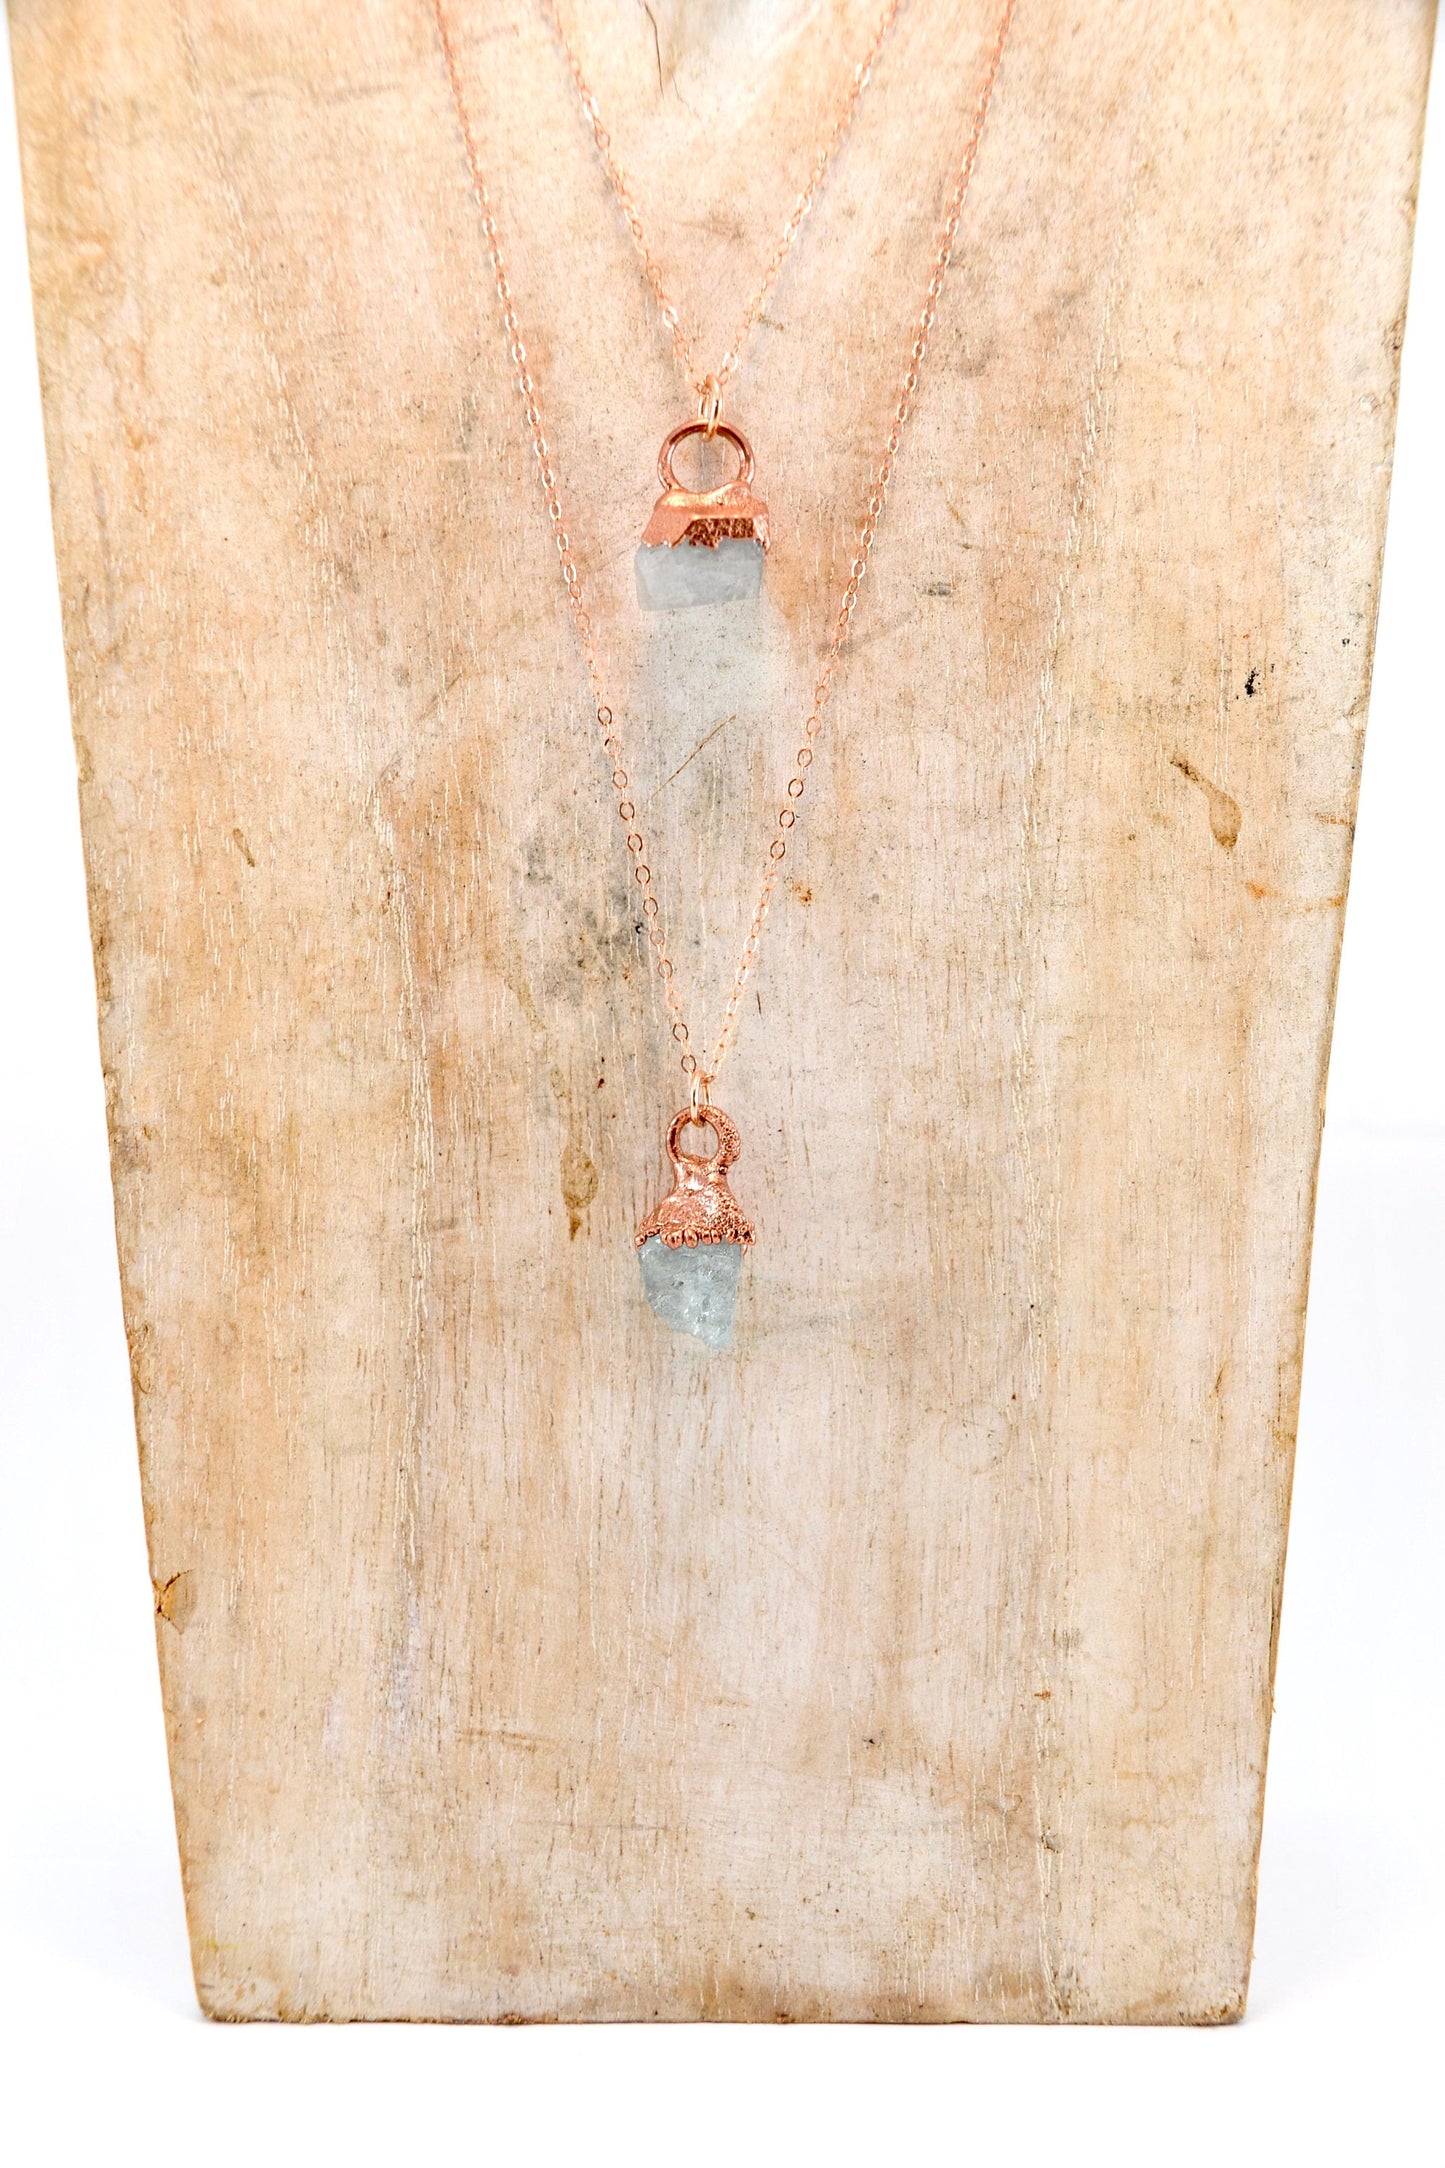 Raw Aquamarine Crystal Necklace | Aquamarine Necklace | March Birthstone